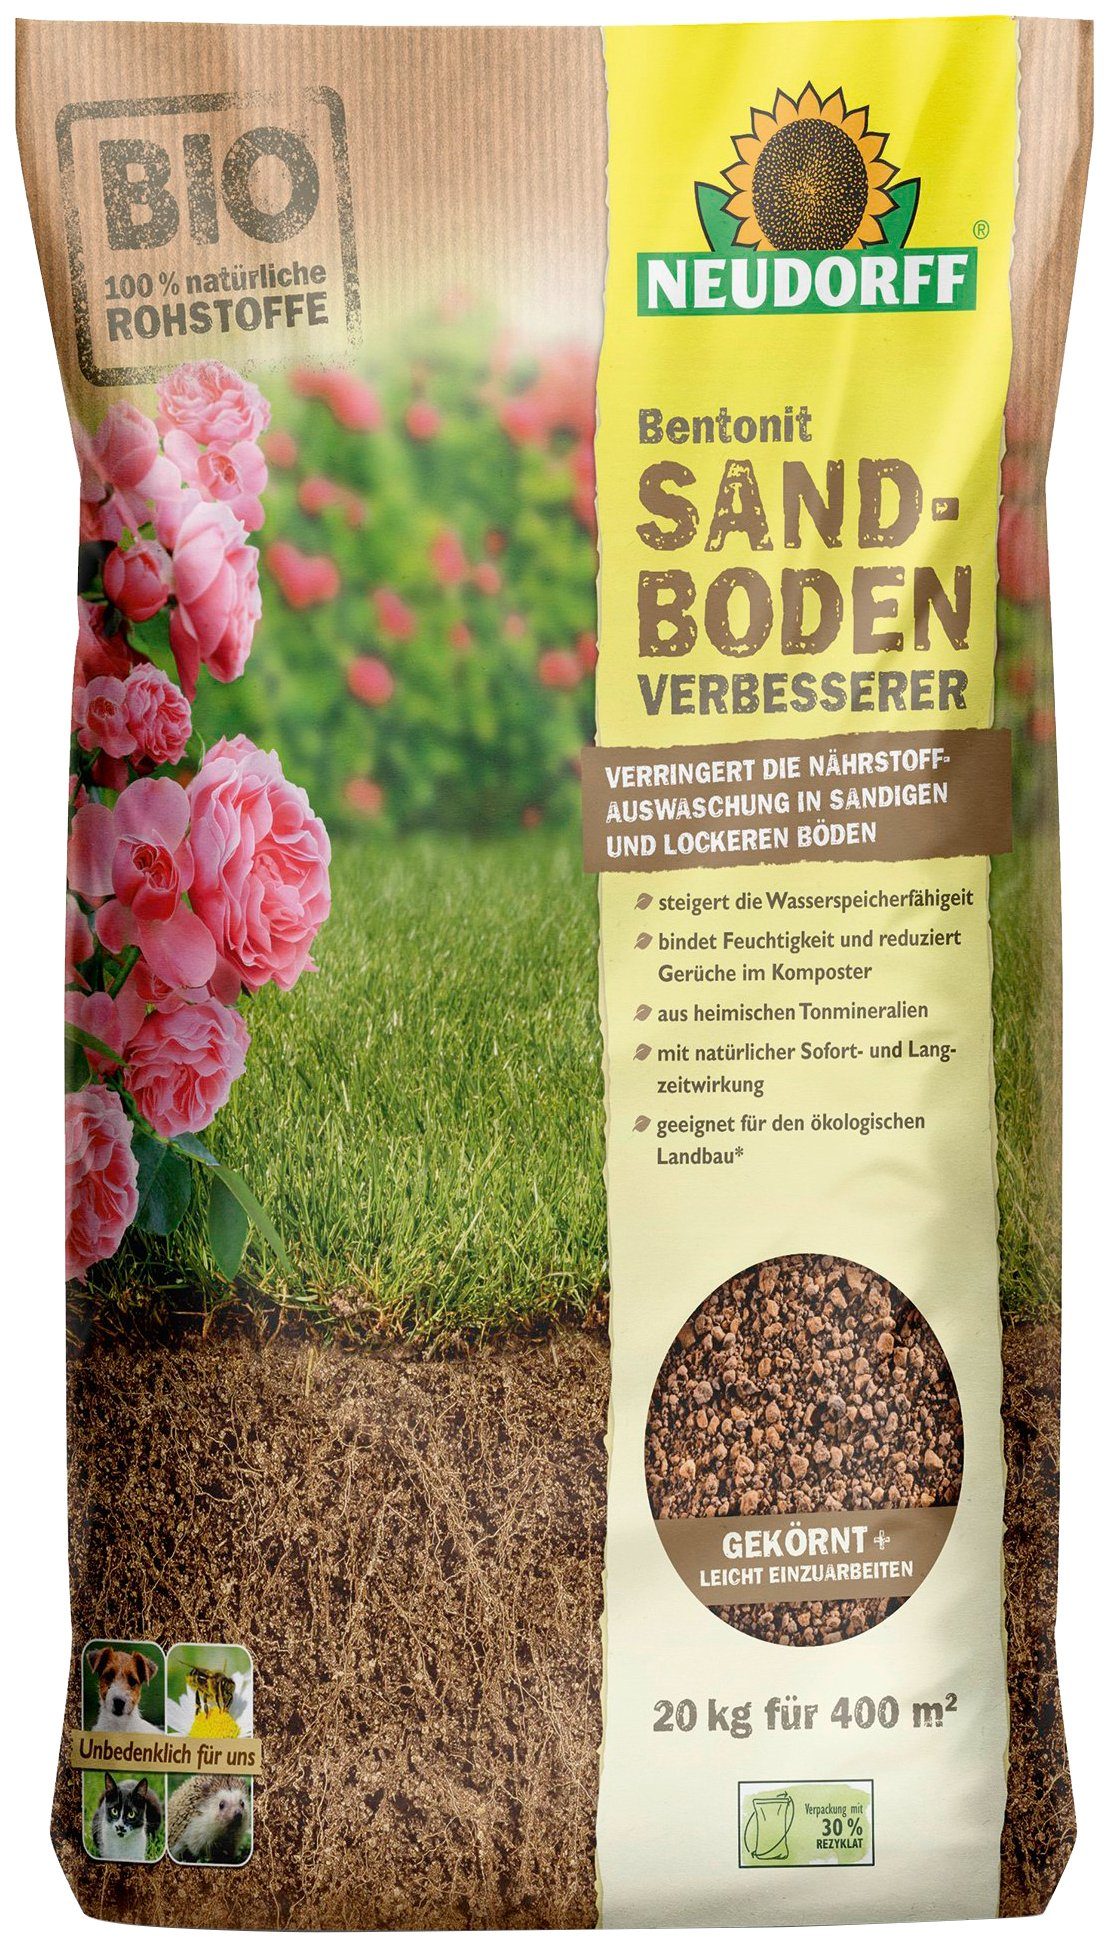 Neudorff Bodenverbesserer »Bentonit Sandboden«, 20 kg